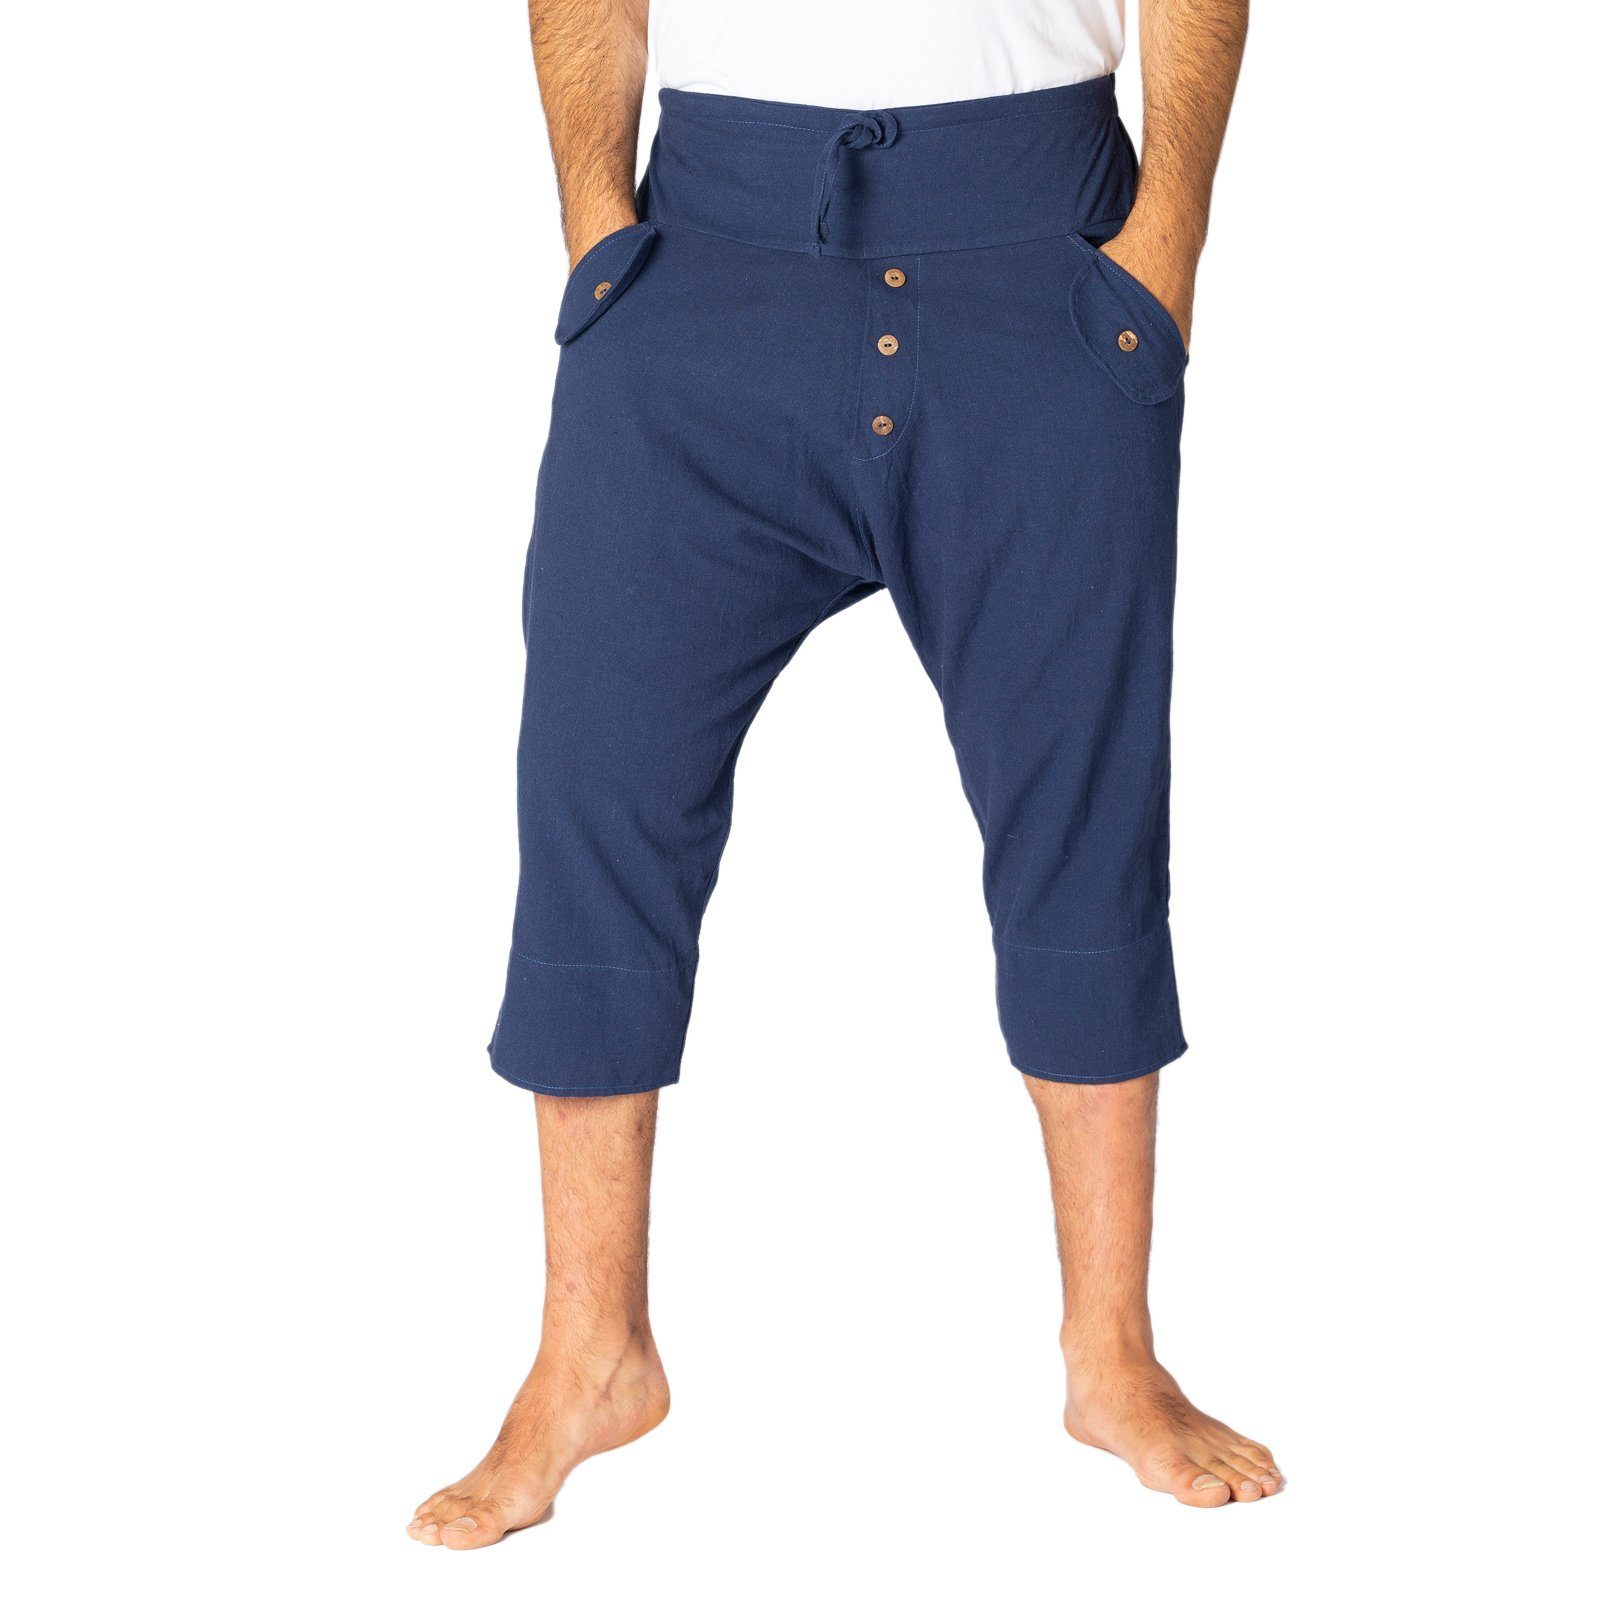 PANASIAM Strandshorts Yogi Shorts dunkel blau